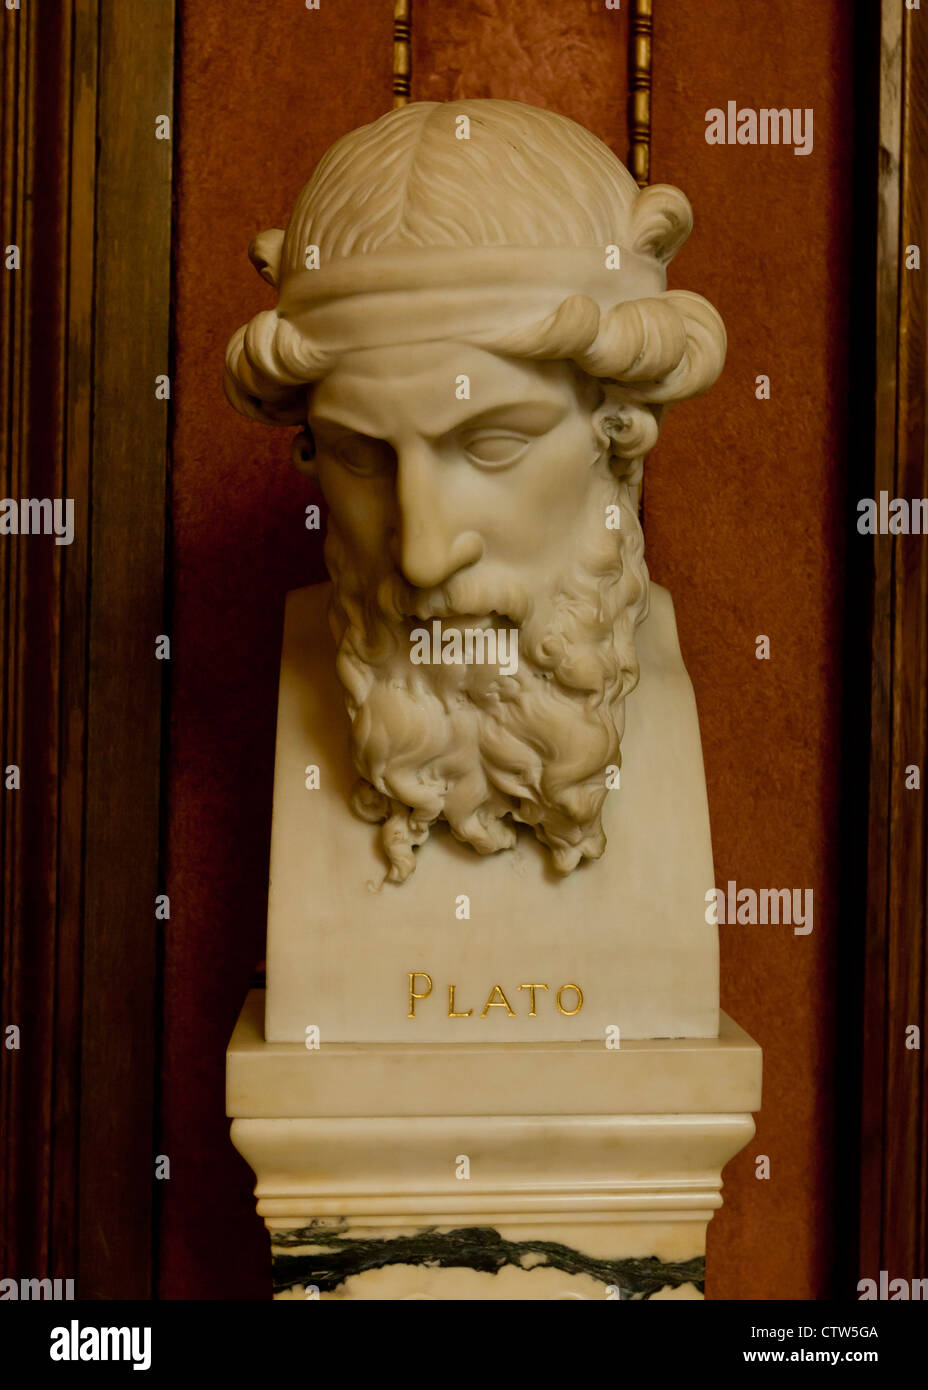 Plato bust sculpture Stock Photo